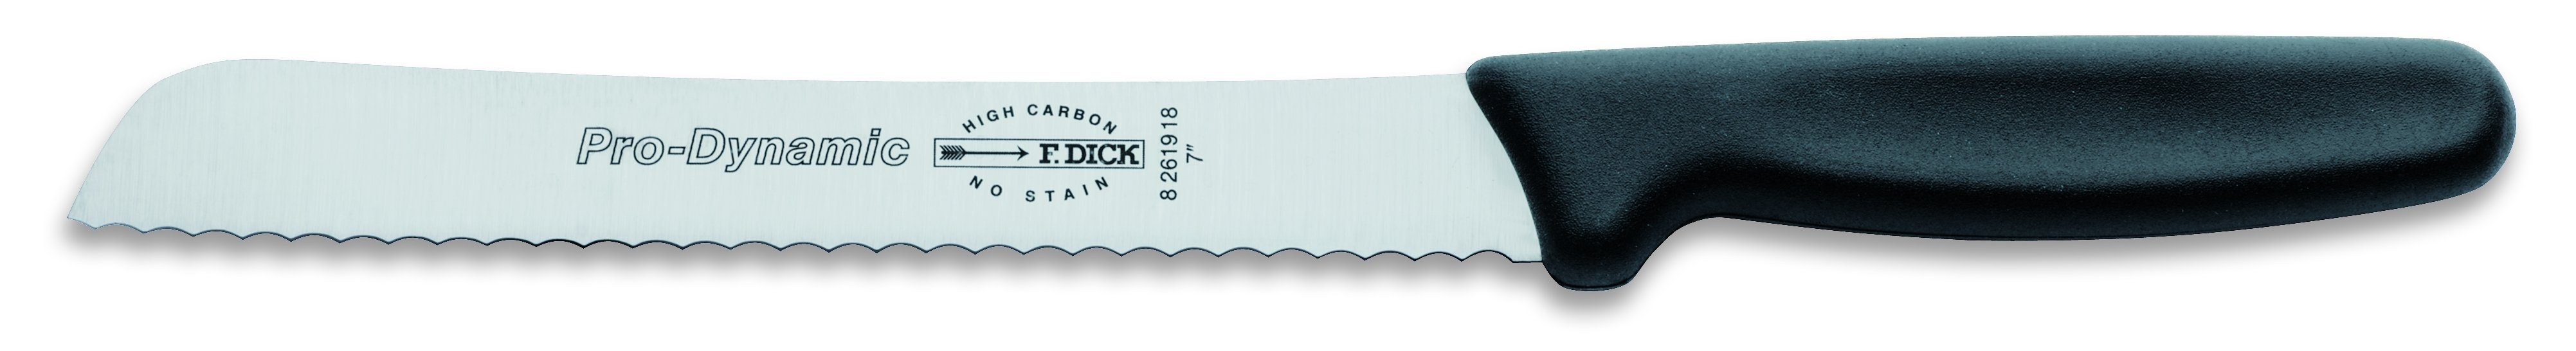 F. DICK Brotmesser F. DICK ProDynamic Brotmesser Klingenlänge 18 cm Kochmesser